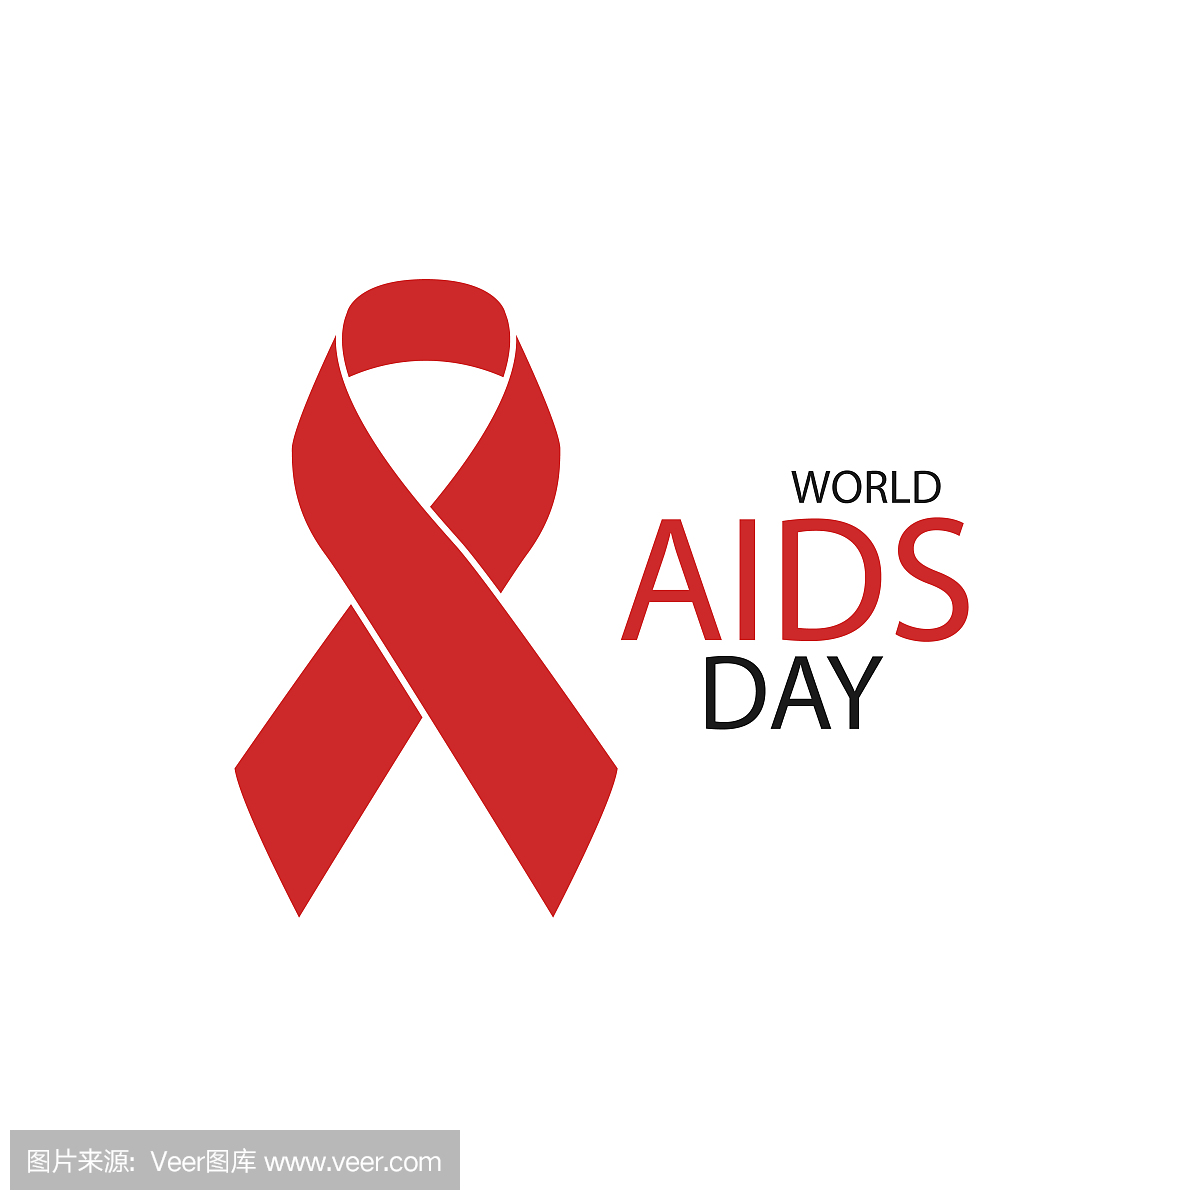 12月1日。世界艾滋病日的概念。艾滋病认识红